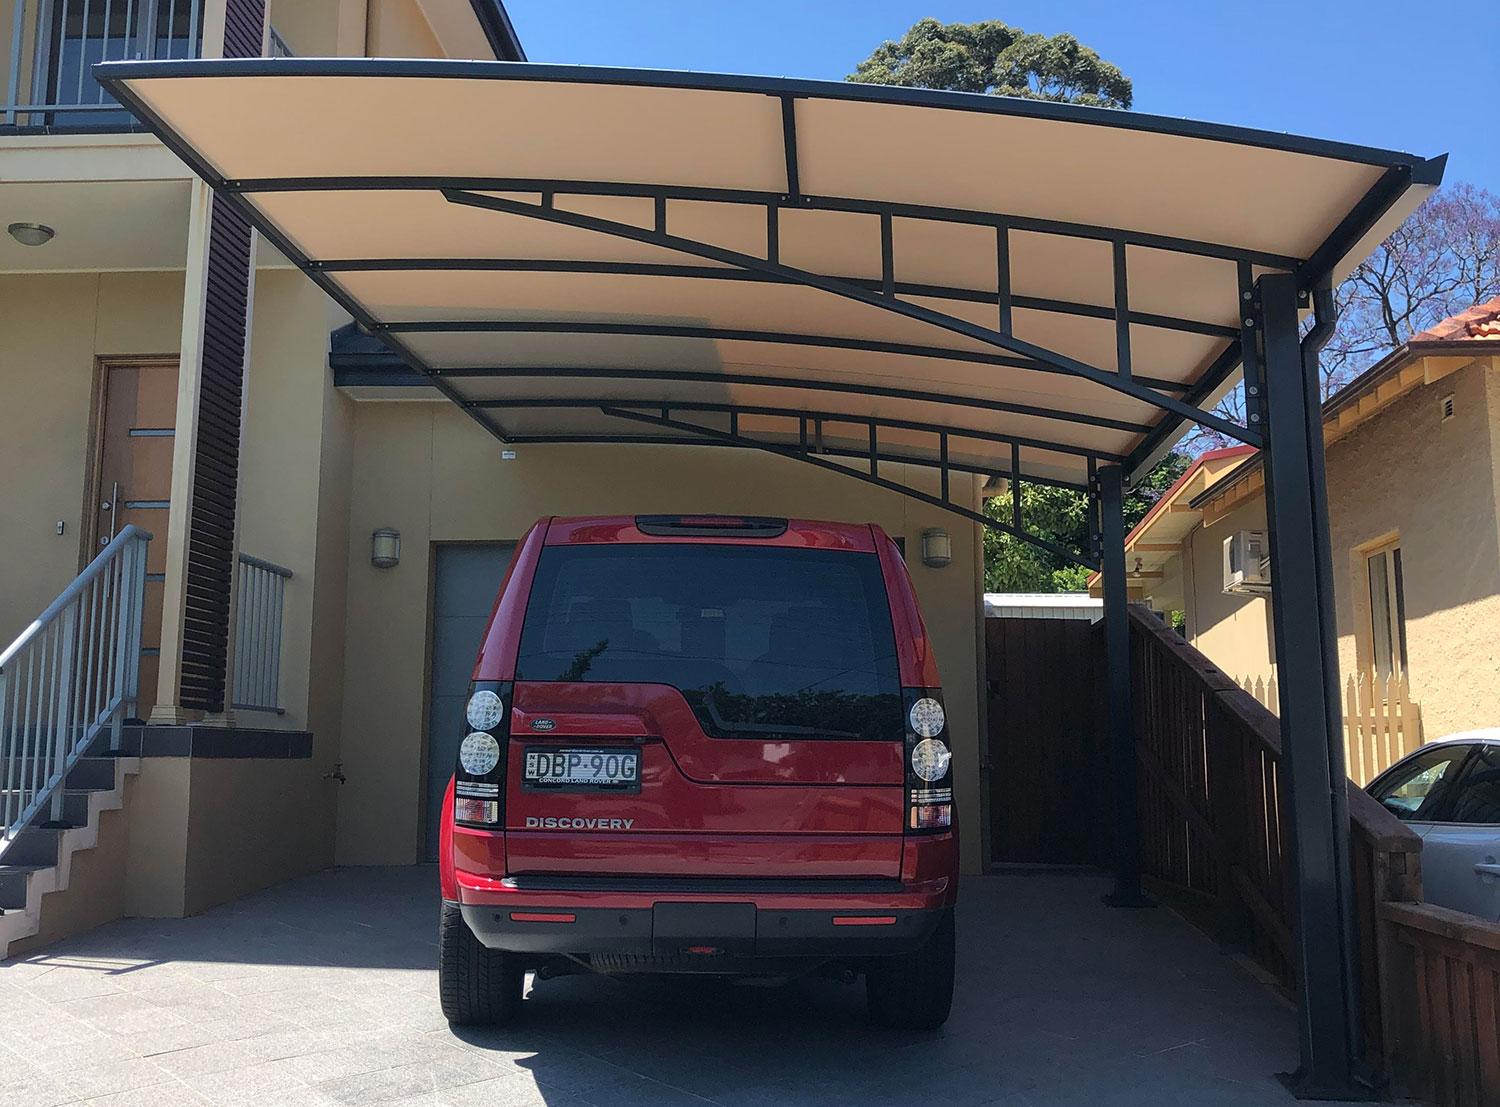 Carport Shade-Parking Shade Canopy-Vehicle Cover-Car Shade-Cantilever Shade-Waterproof Shade-Sun Shade